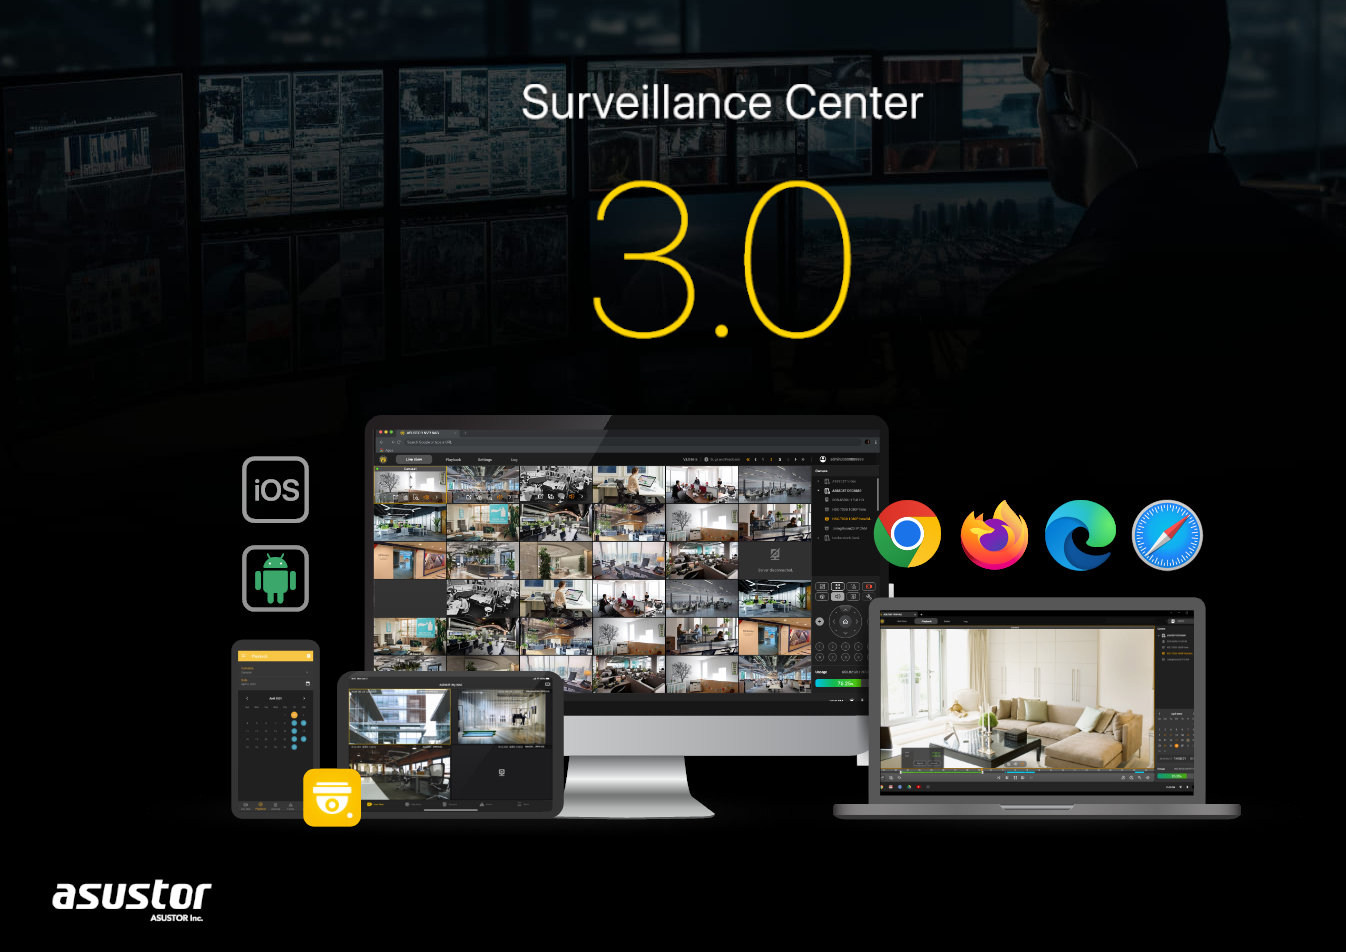 Surveillance Center 3.0 I 2d60e